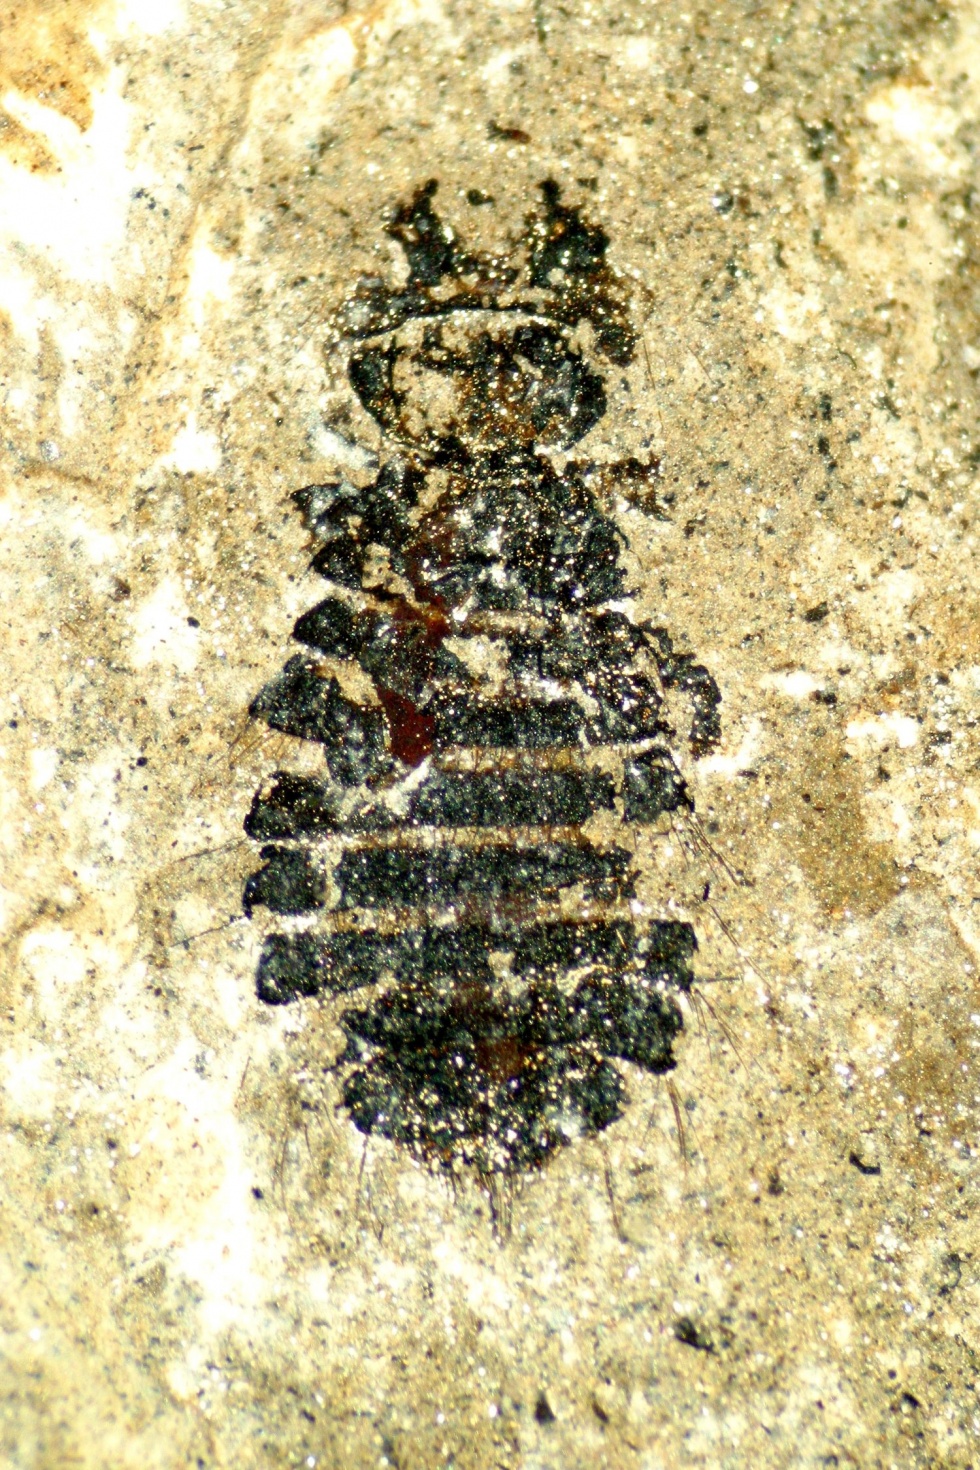 Vogellaus - Megamenopon rasnitsyni (Naturhistorisches Museum Mainz / Landessammlung für Naturkunde Rheinland-Pfalz CC BY-NC-SA)